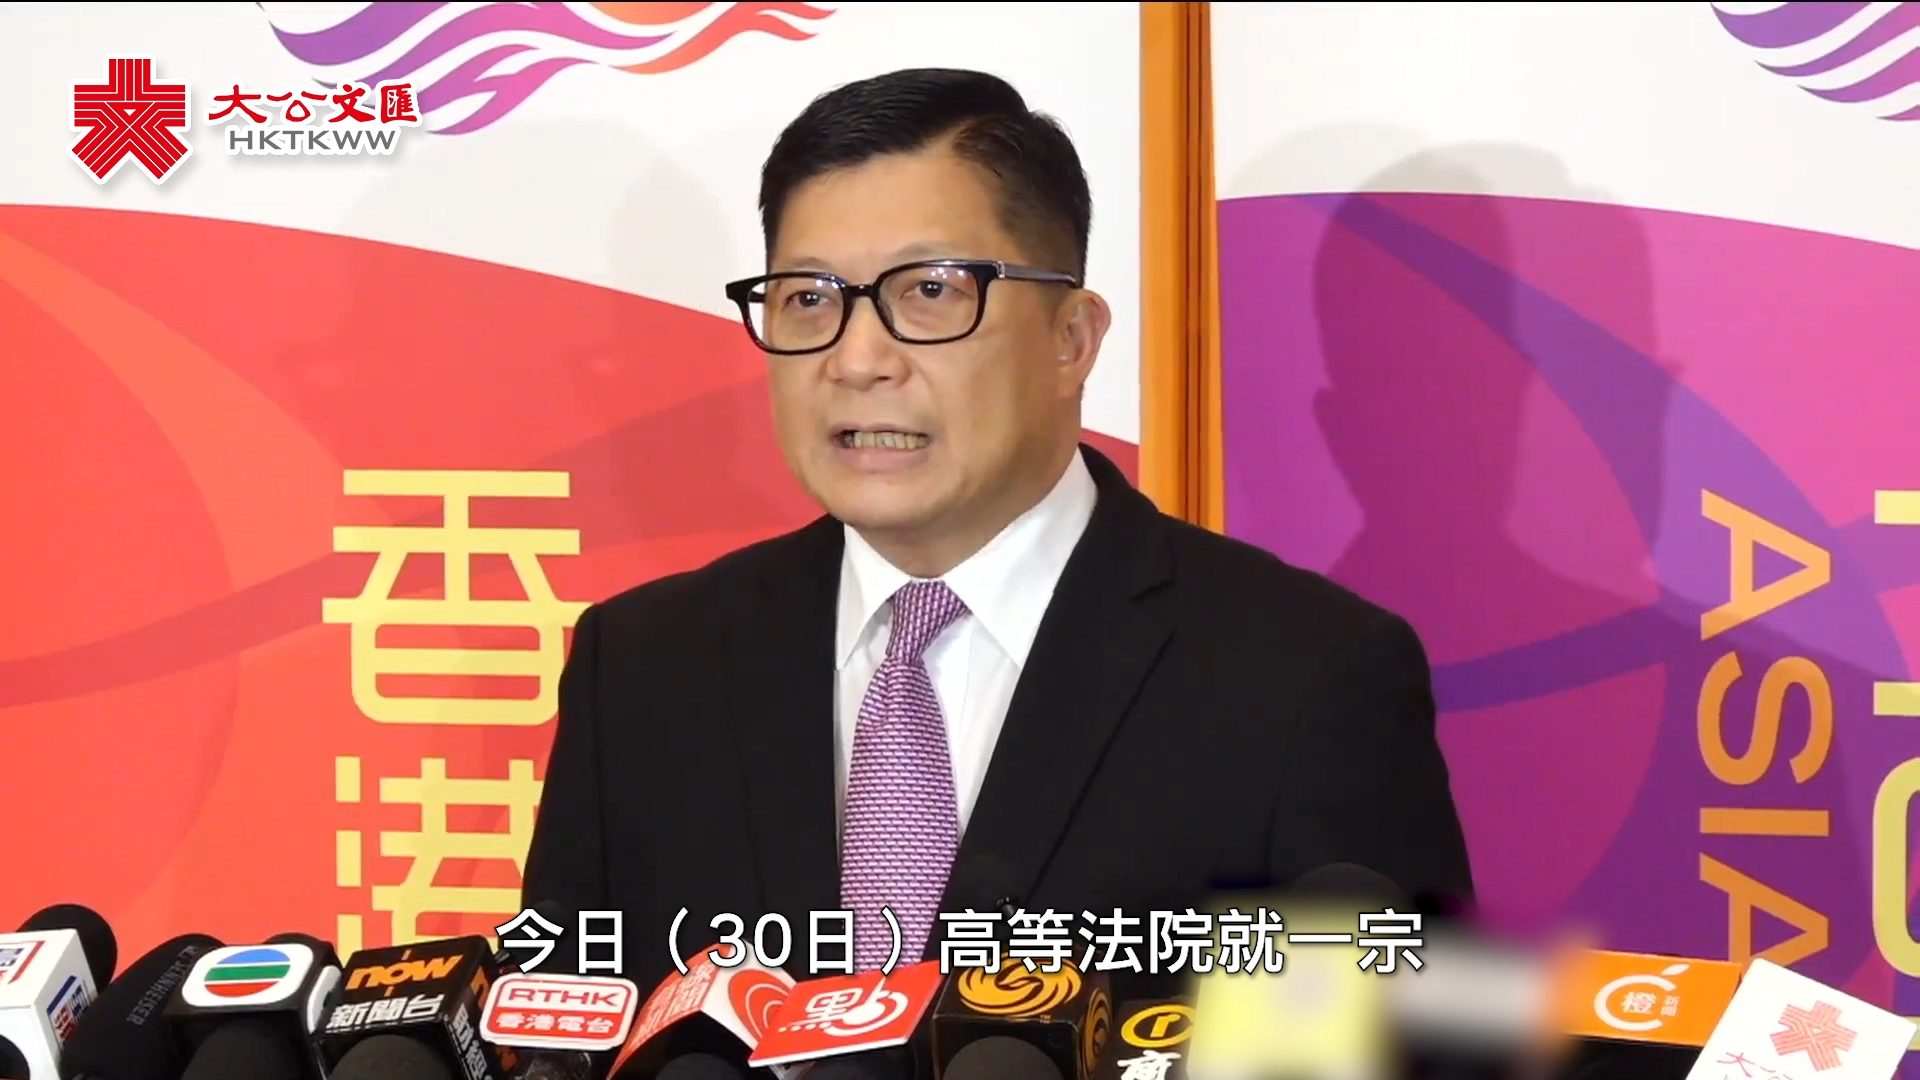 邓炳强斥责“35+颠覆政权案”被告做法等同出卖香港